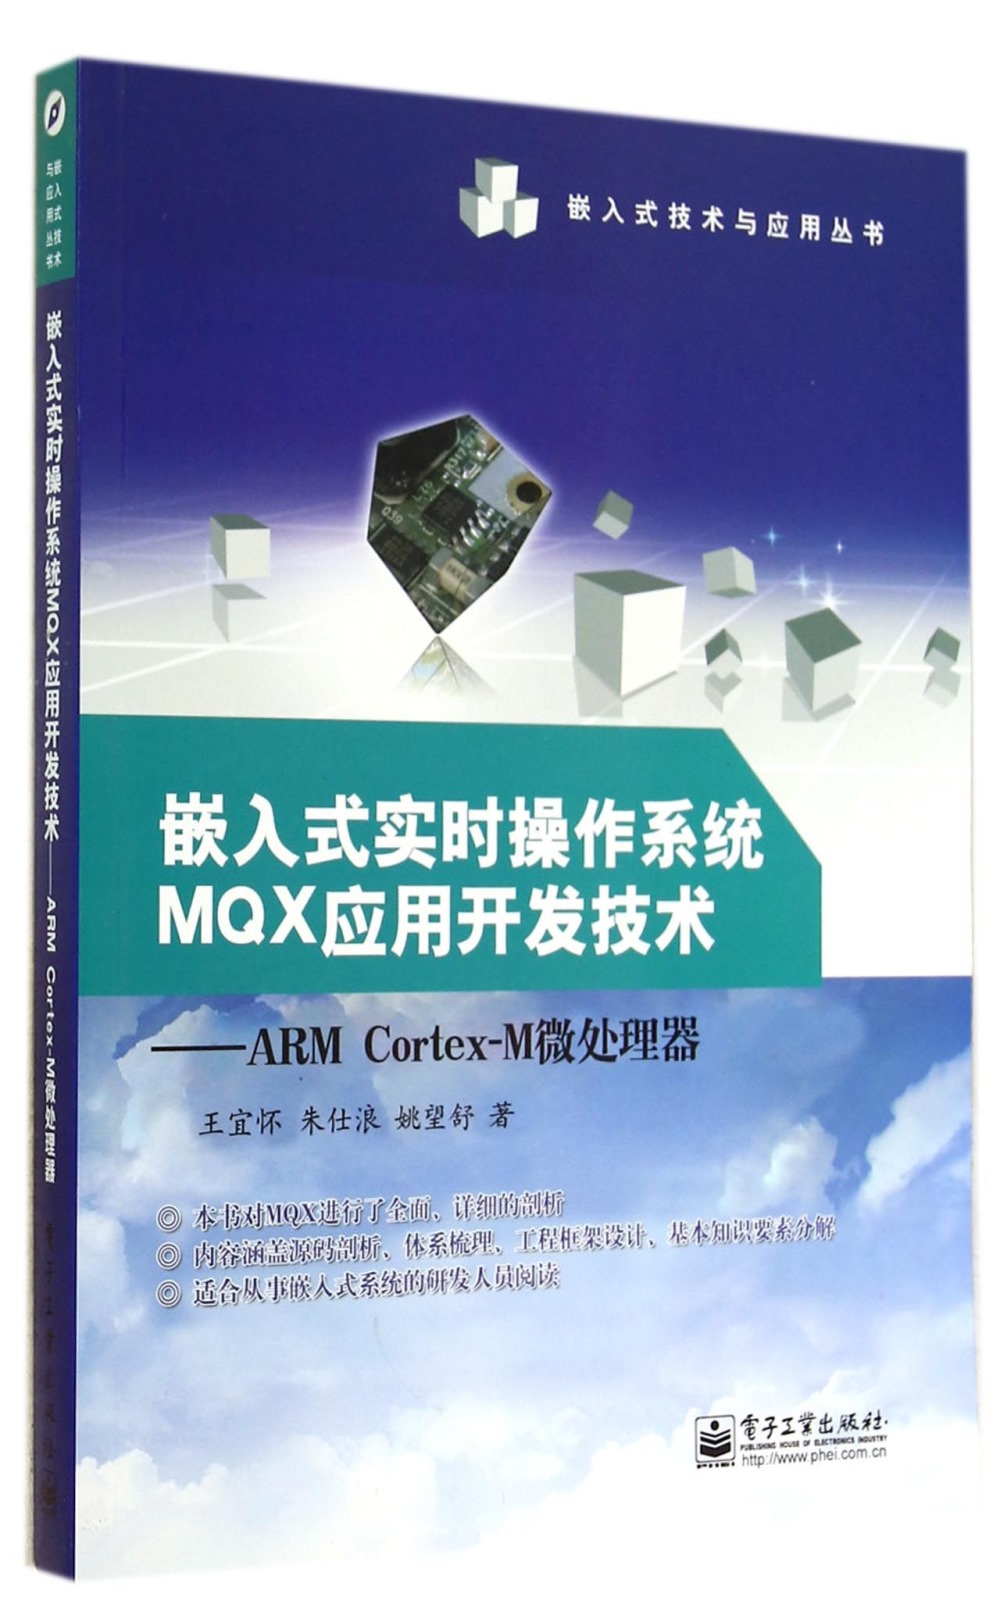 嵌入式實時操作系統MQX應用開發技術——ARM Cortex-M微處理器